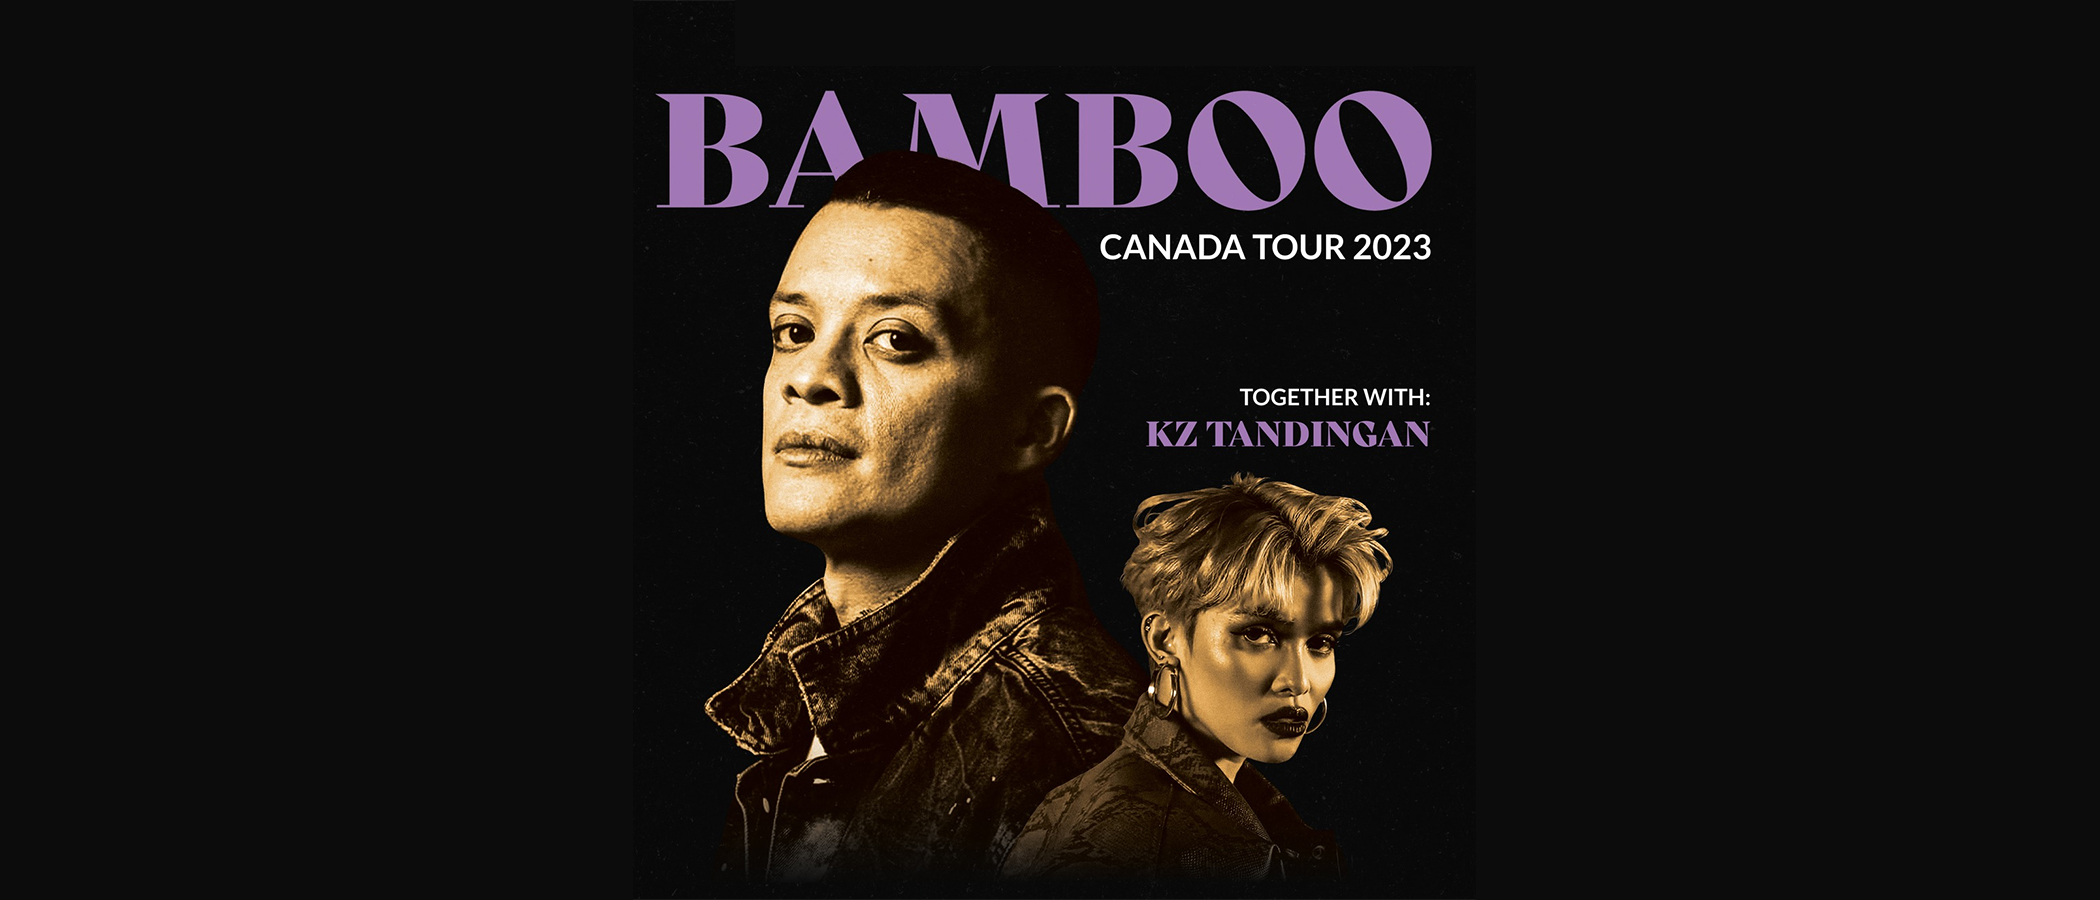 BAMBOO with KZ TANDINGAN CANADA TOUR 2023 News